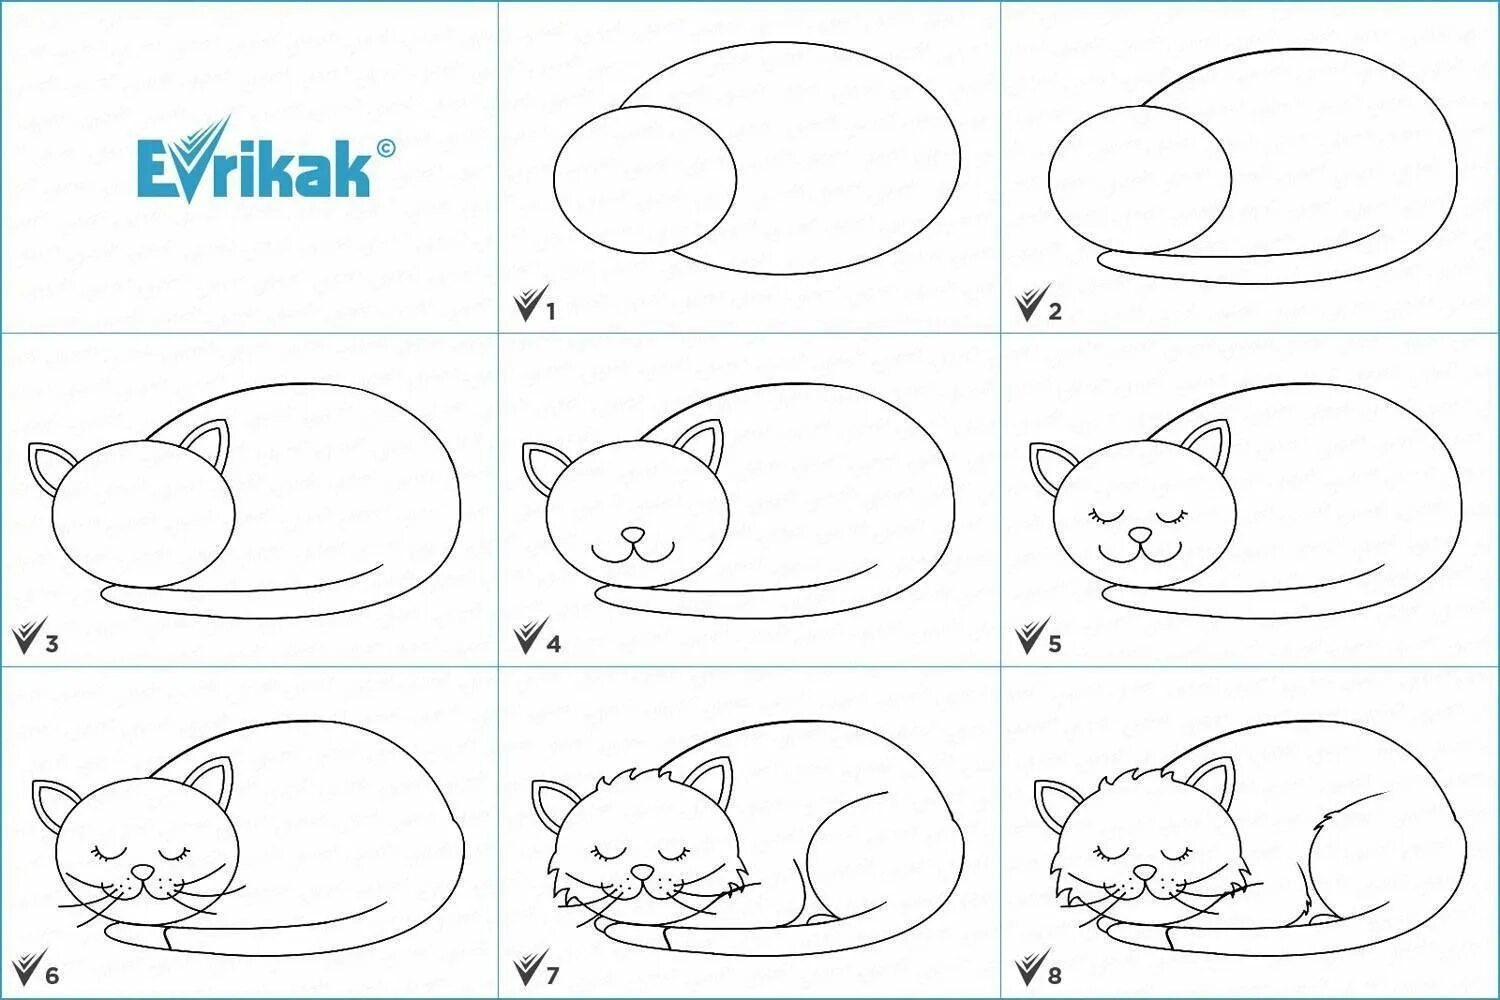 Нарисовать кошку поэтапно для детей. Схема рисования кошки. Схема рисования кошки для дошкольников. Поэтапное рисование котенка для детей. Простые рисунки для начинающих.